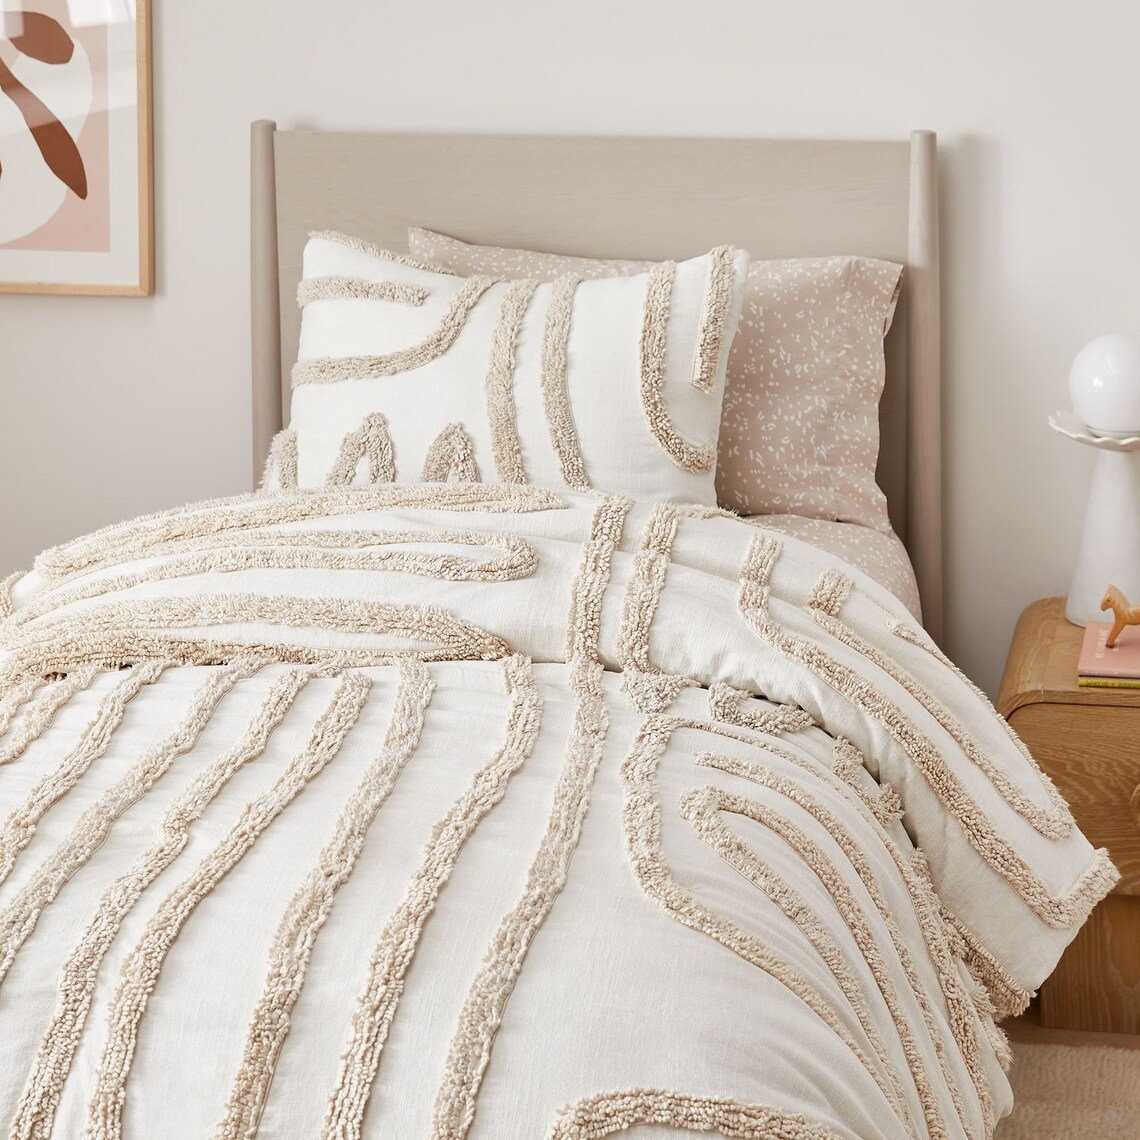 Bed Comforter -  UK